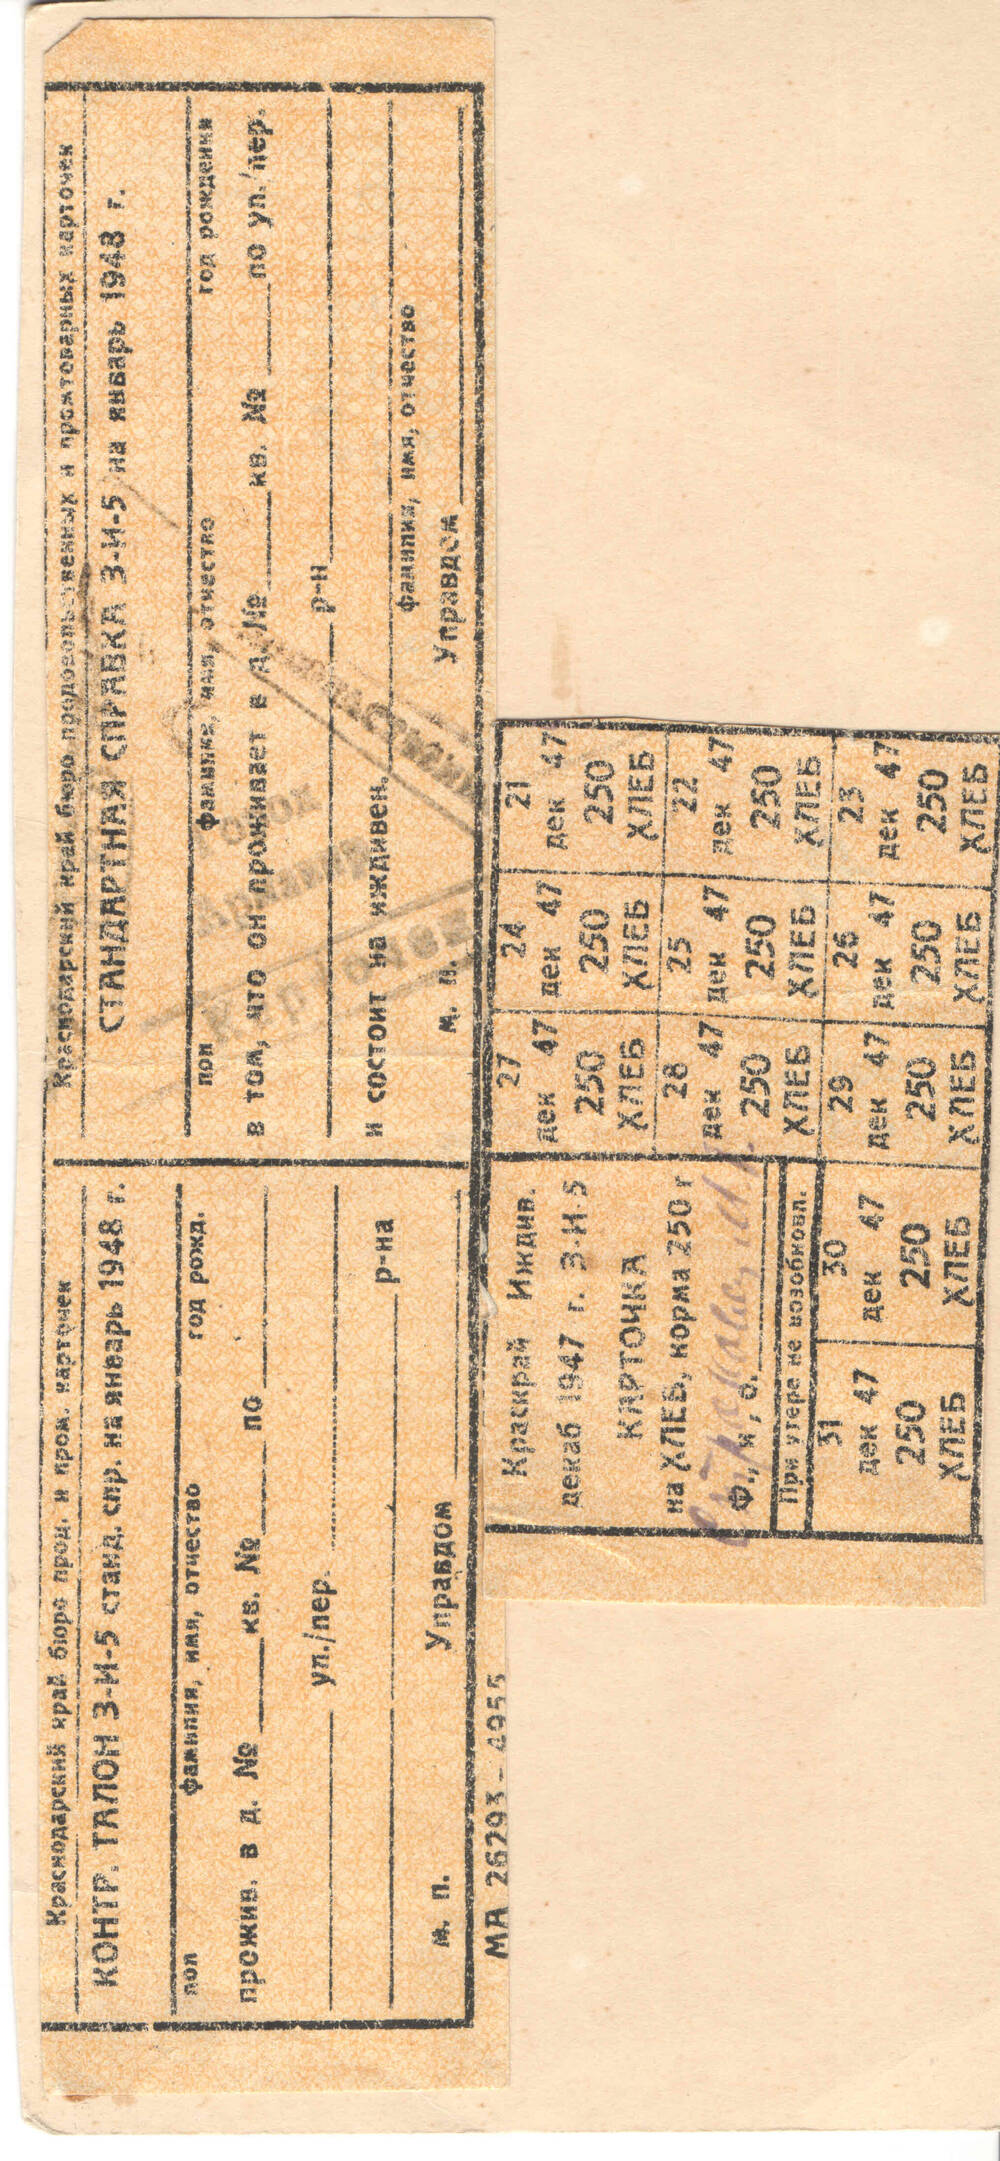 Карточки хлебные иждивенца. норма 250 гр. в день с 11 талонами и со стандартной справкой на 1948 год.